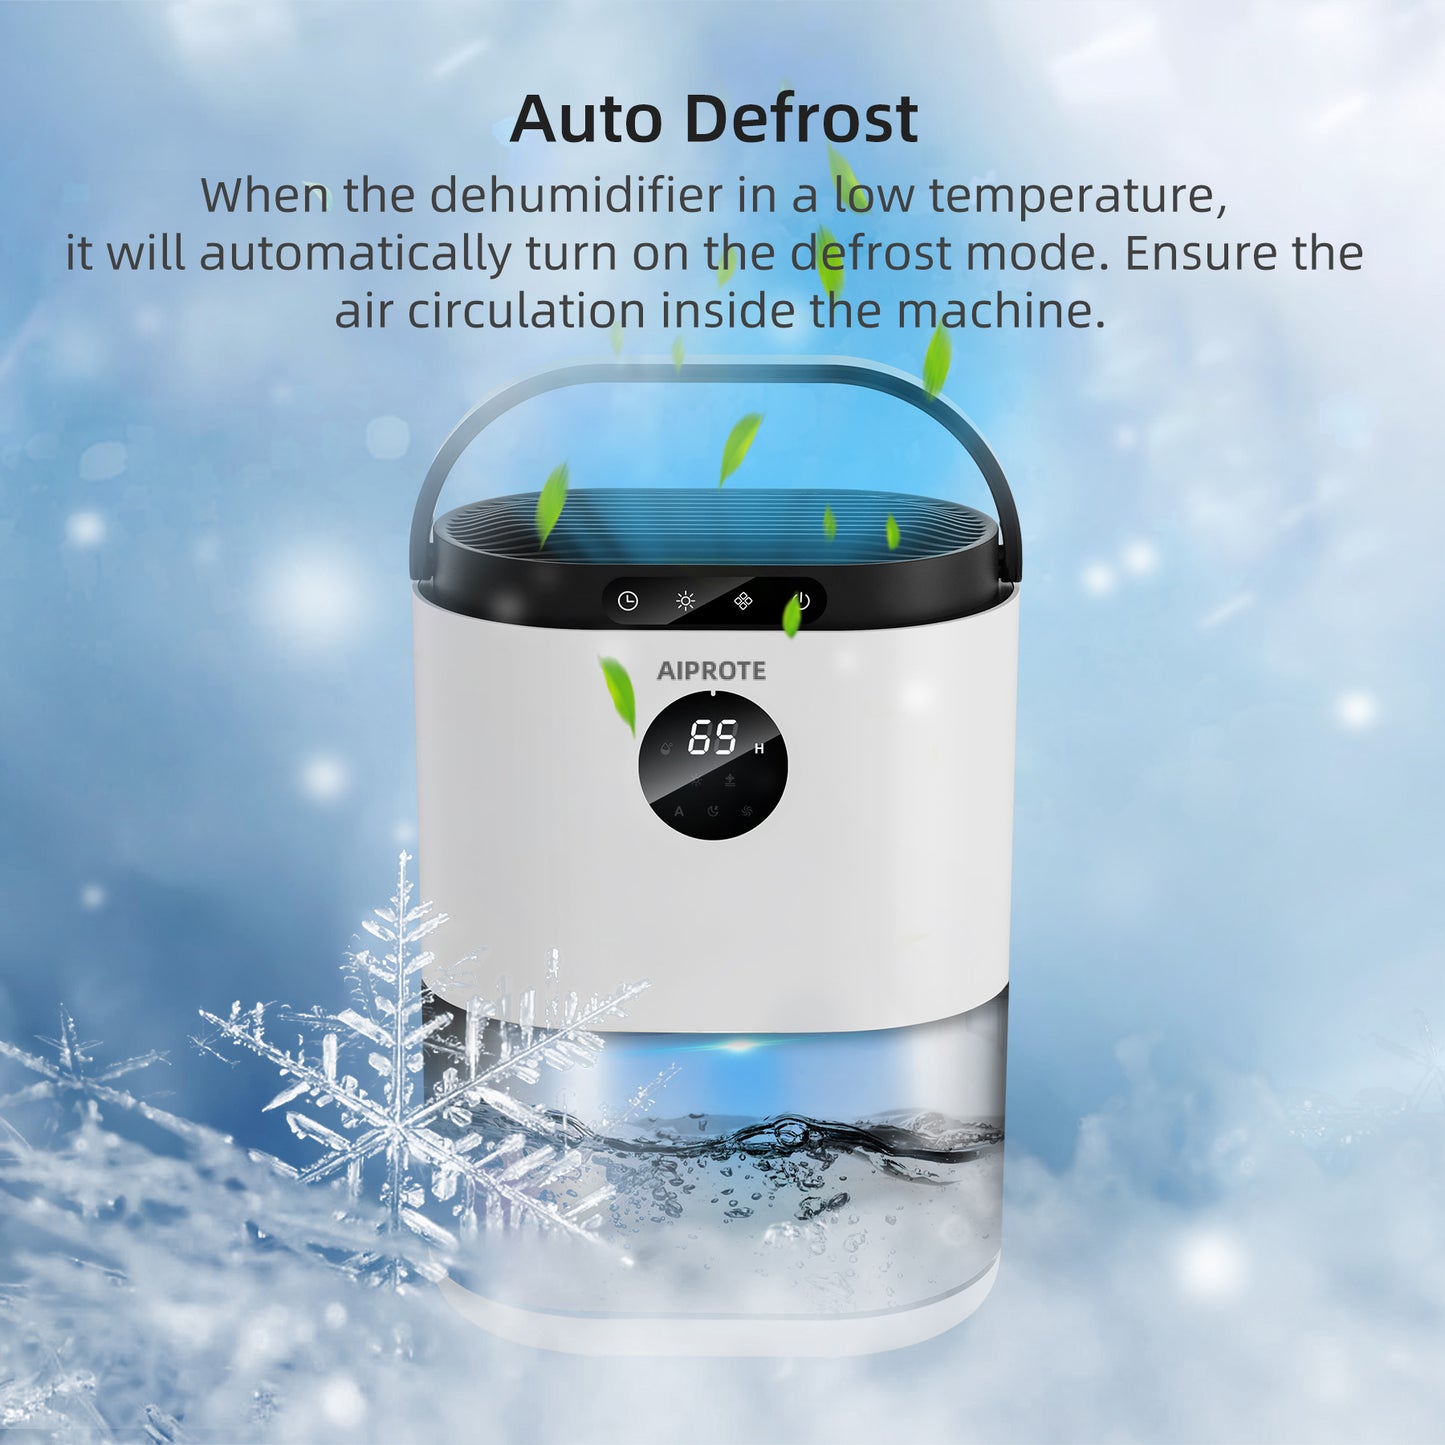 AIPROTE Auto-Defrost Dehumidifier